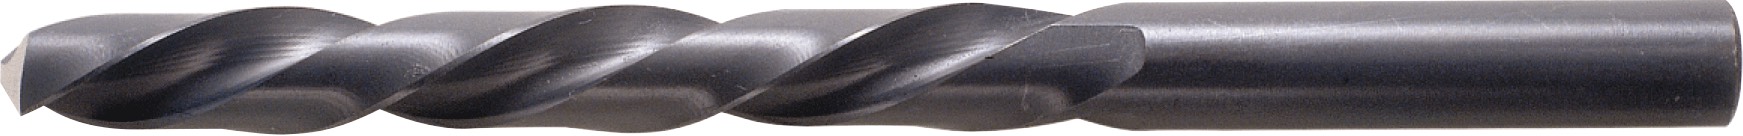 Сверло по металлу из быстрорежущей стали для станков ЧПУ OSAWA 138NB заказать